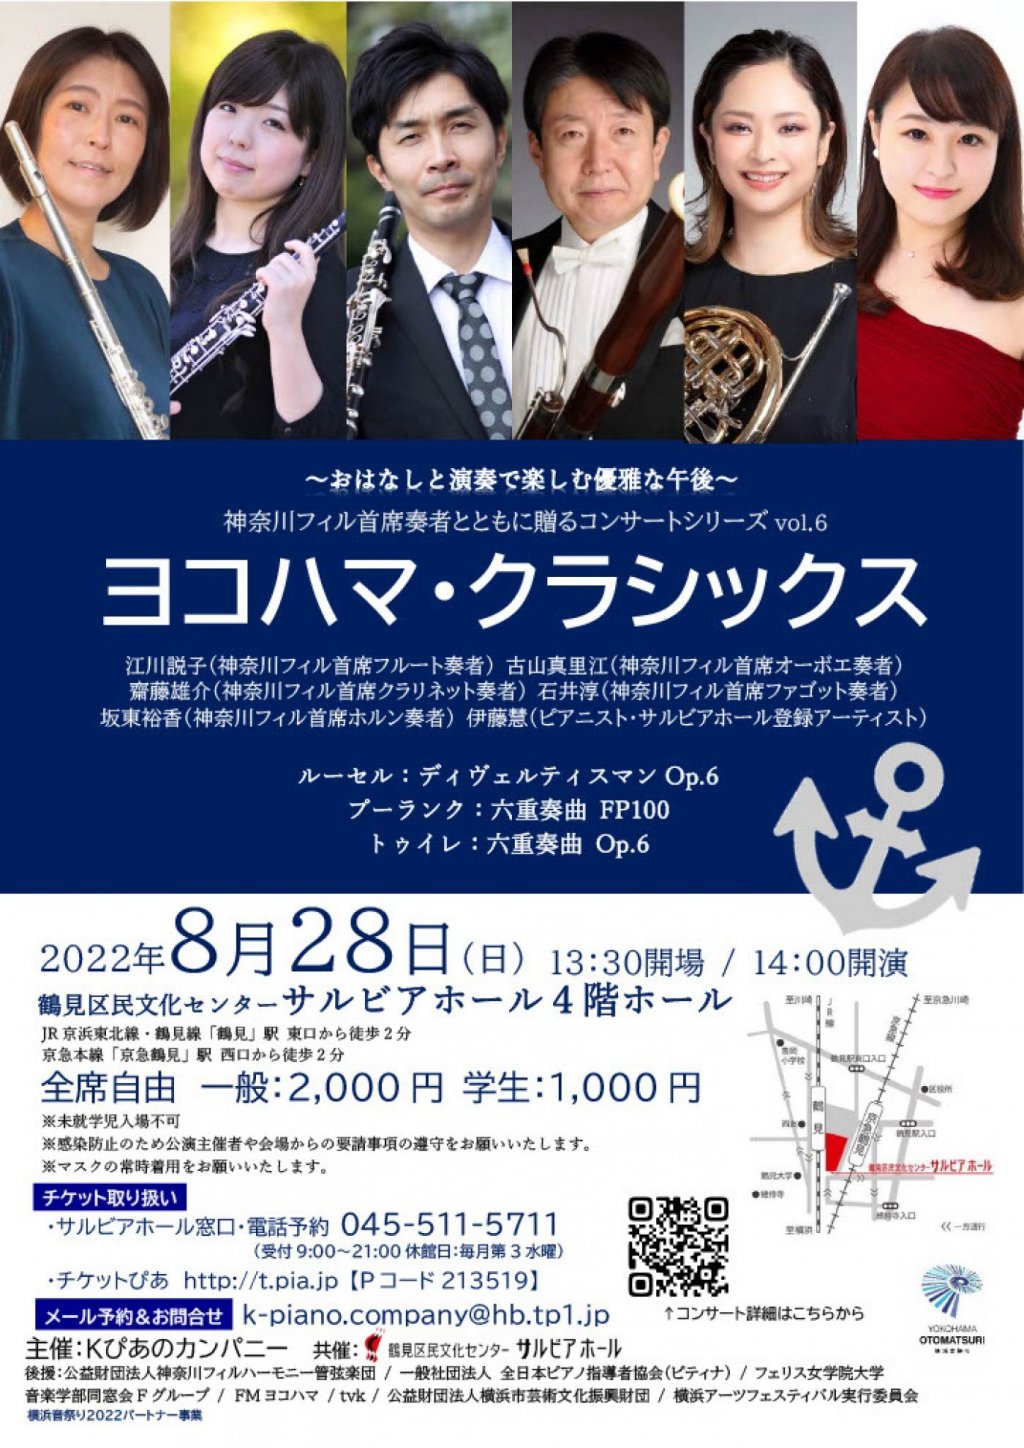 神奈川フィル首席奏者とともにおくるコンサートシリーズ「ヨコハマ・クラシックスvol.6」